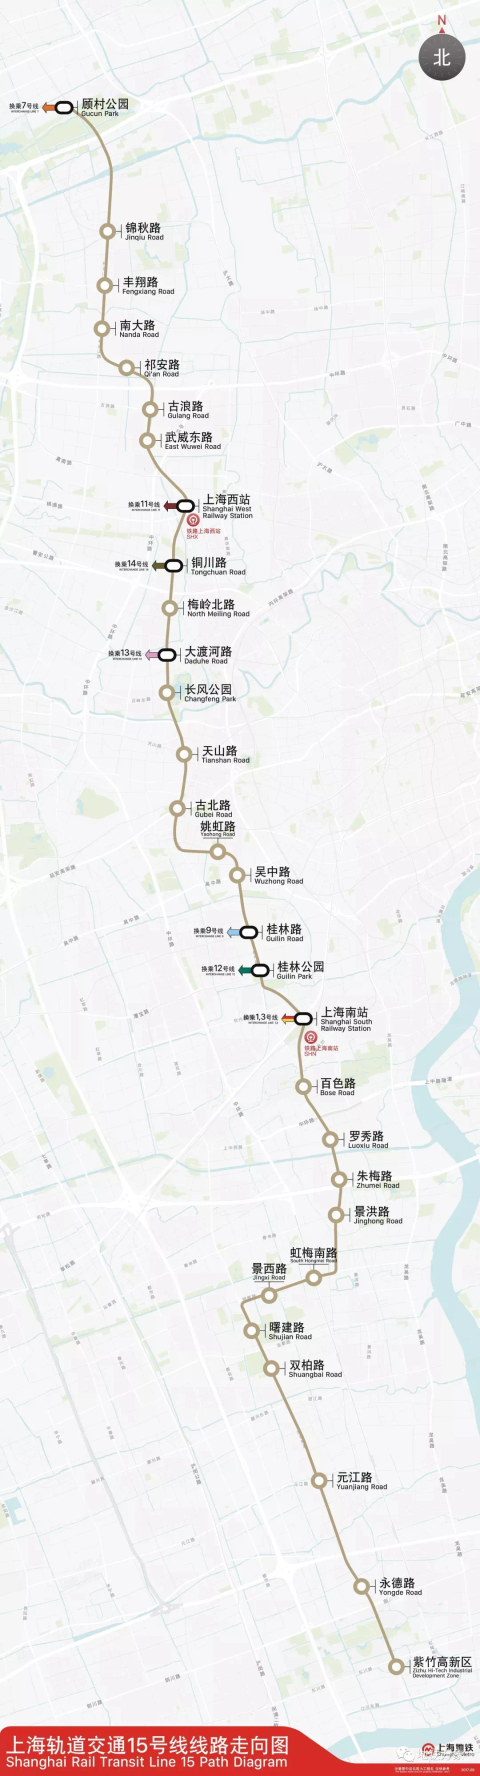 上海市两会重磅消息:奉贤区又将新添一条轨交线路!